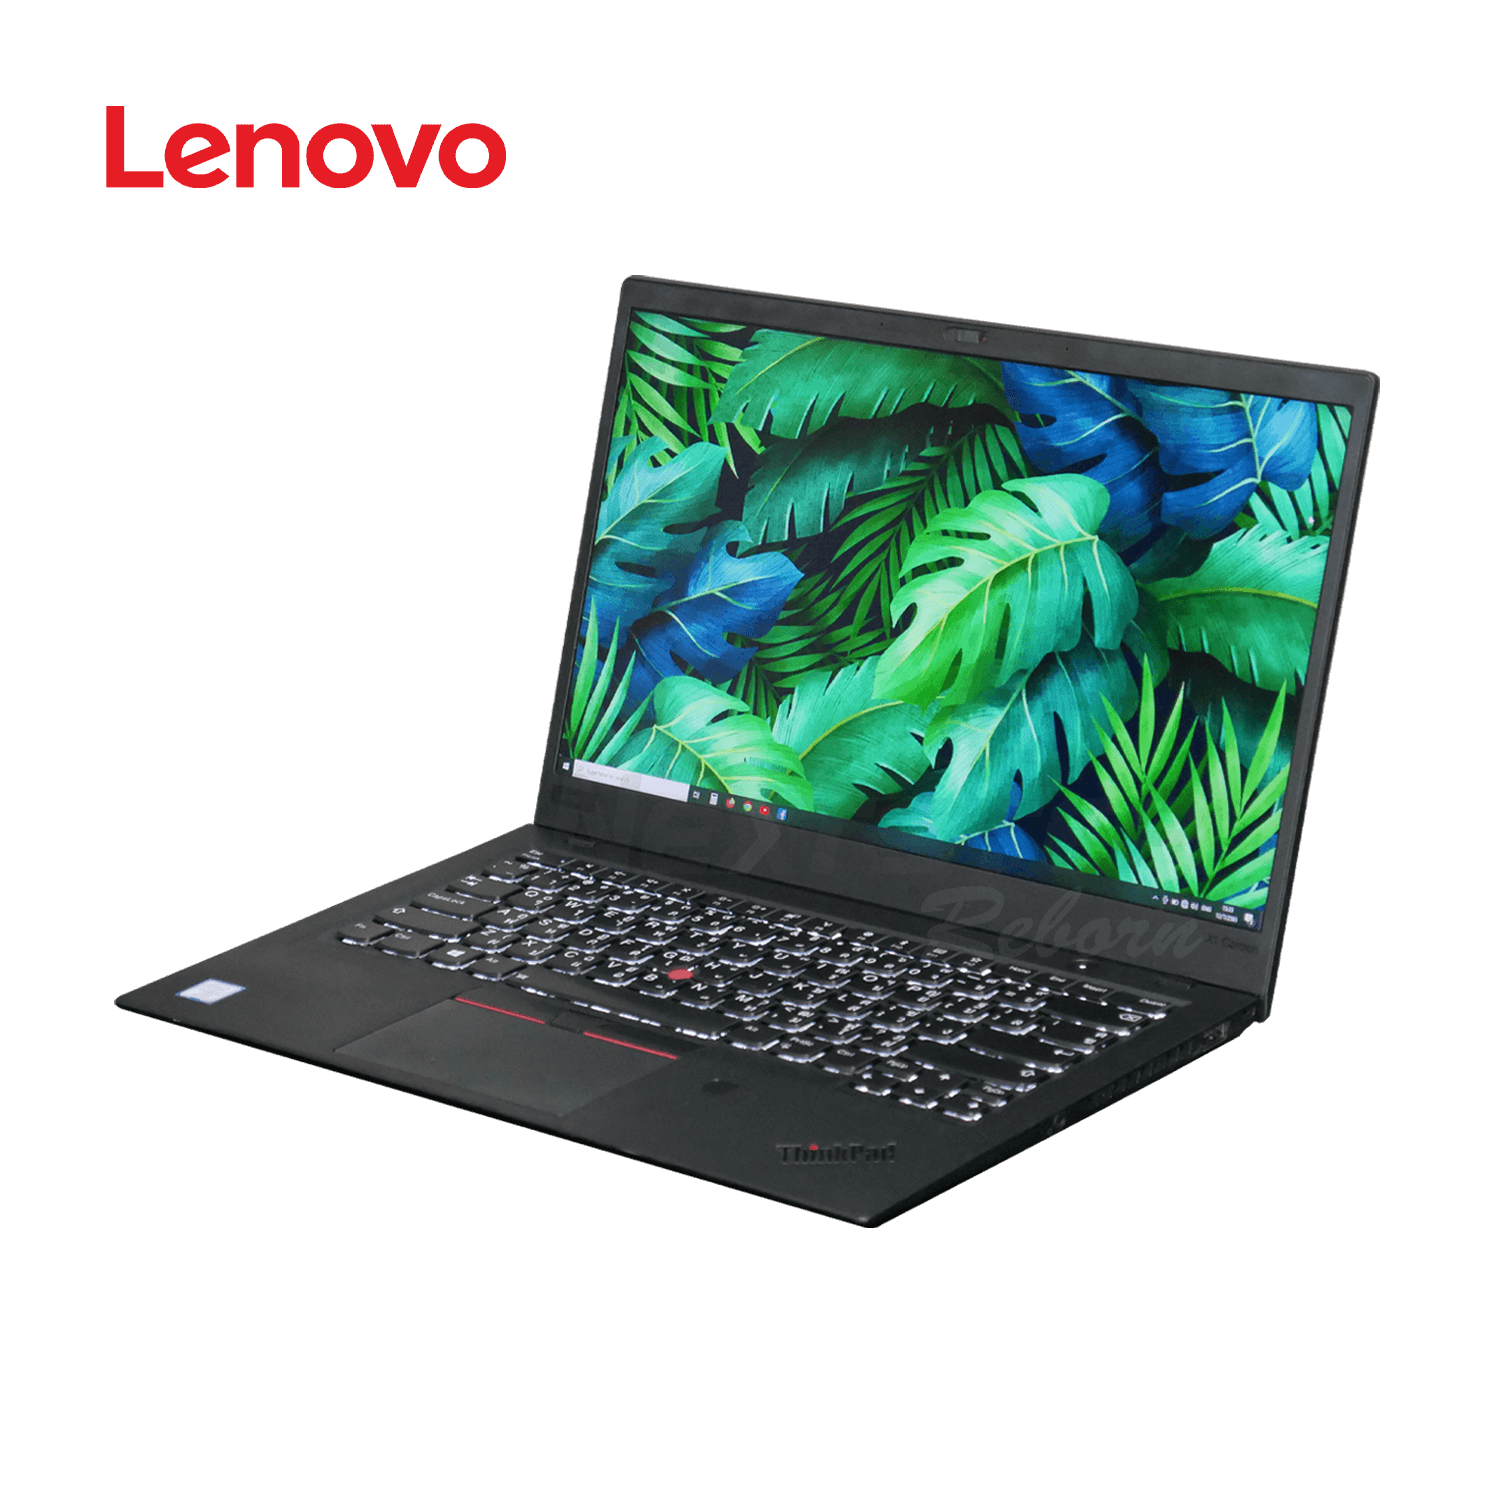 คอมมือสอง) Notebook Lenovo ThinkPad X1 Carbon i5-8350U Ram 8GB M.2